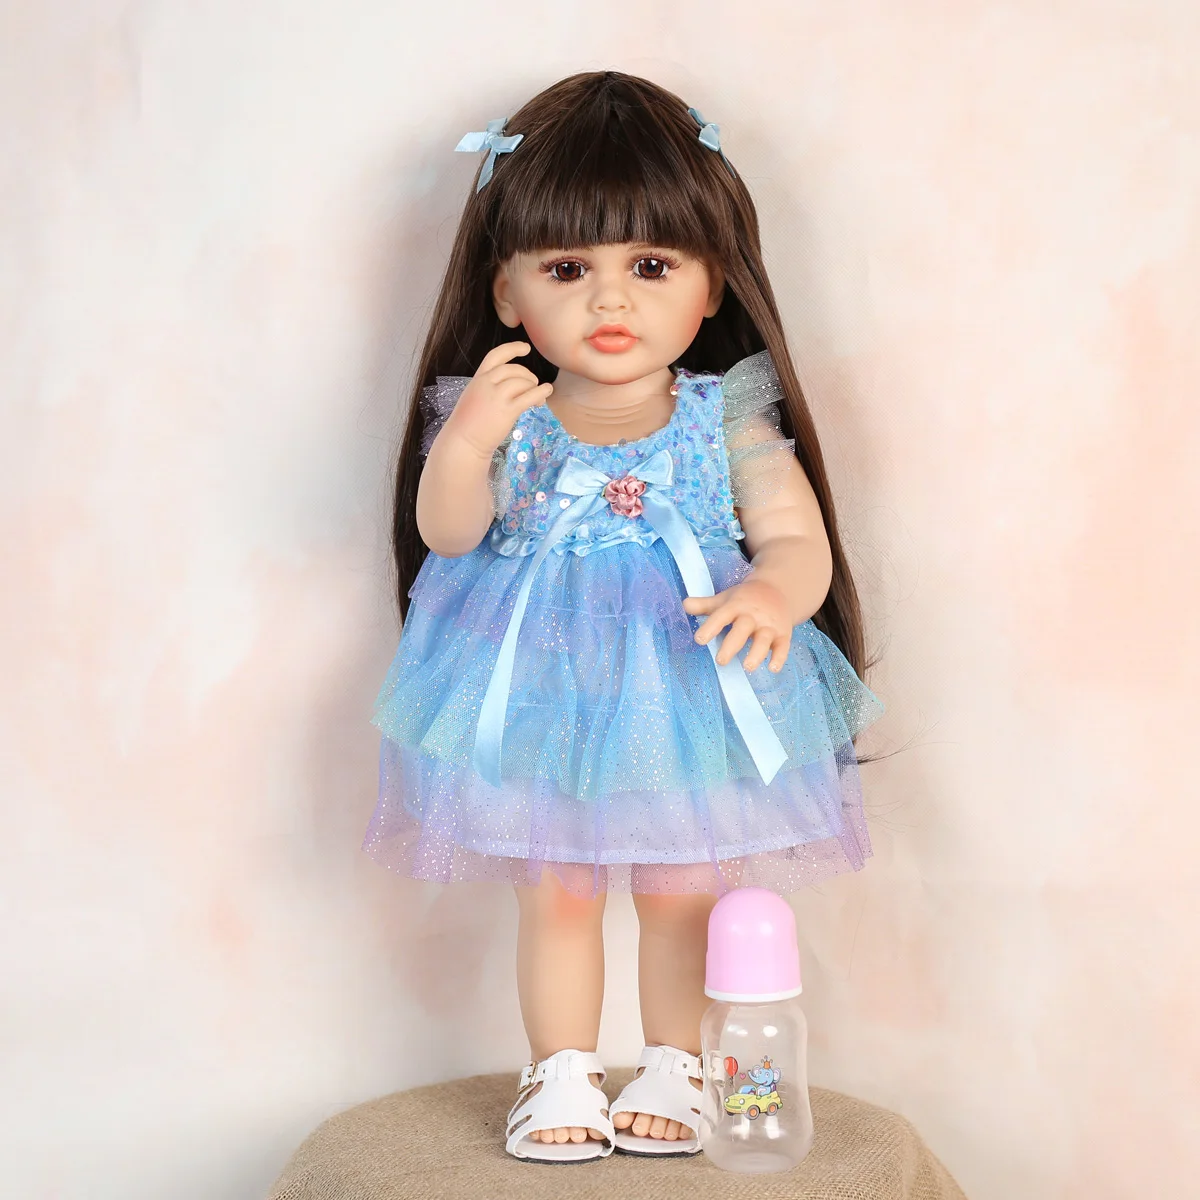 KEIUMI 55 см Полностью силиконовая кукла в голубой марлевой юбке Reborn Baby Doll Bebe Reborn Toys Подарки на день рождения для ребенка